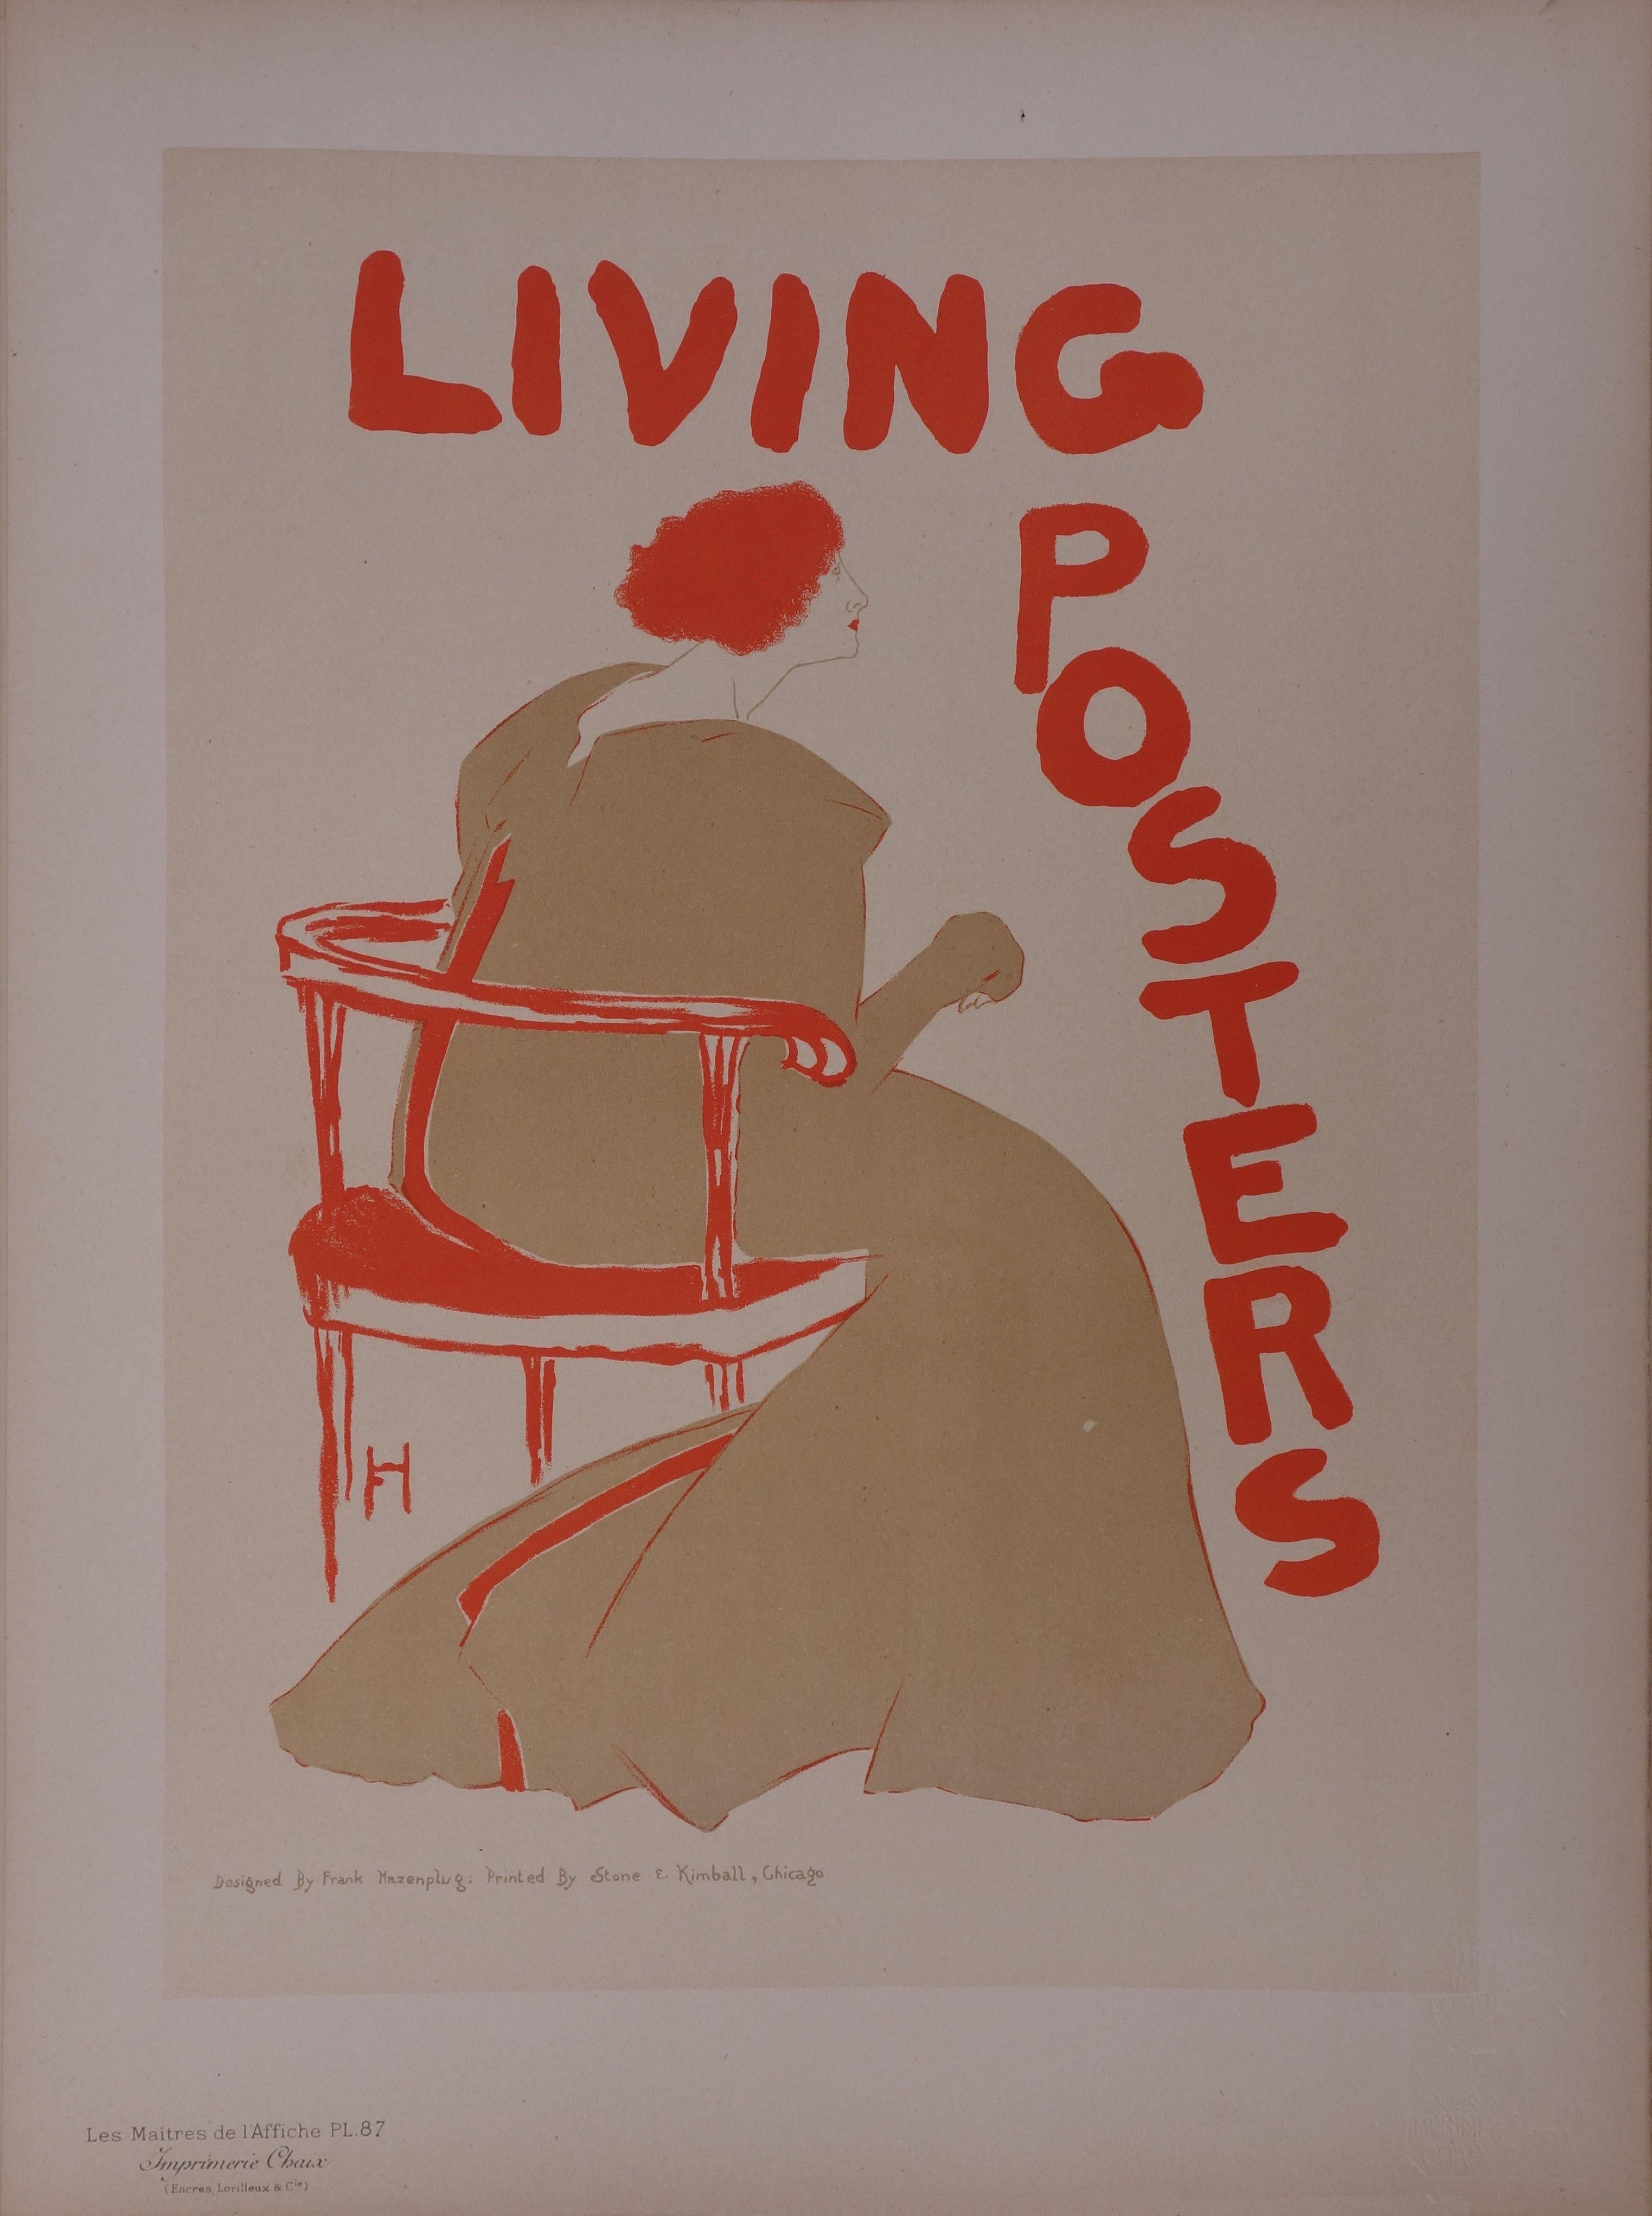 Frank Hazenplug Figurative Print - Living Posters (Chicago) - Lithograph (Les Maîtres de l'Affiche), 1897